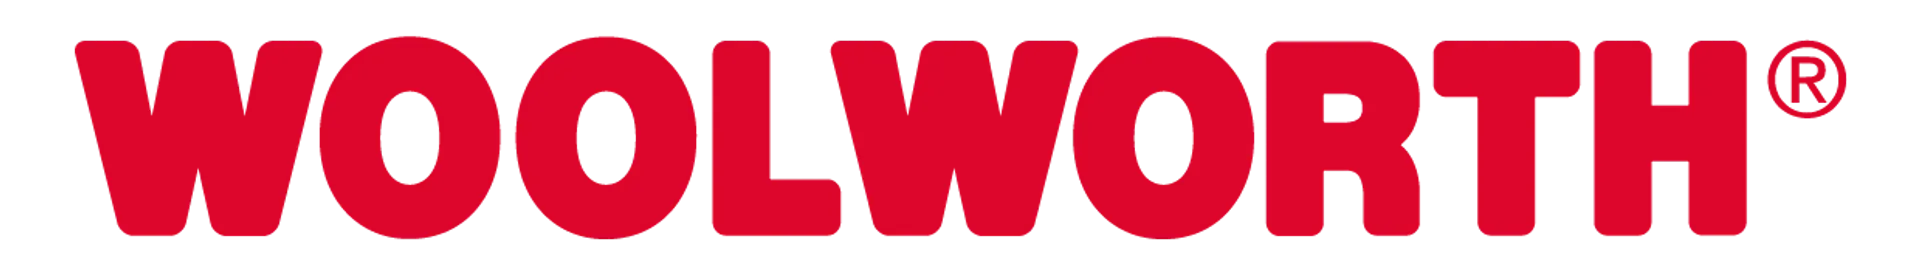 WOOLWORTH logo die aktuell Flugblatt